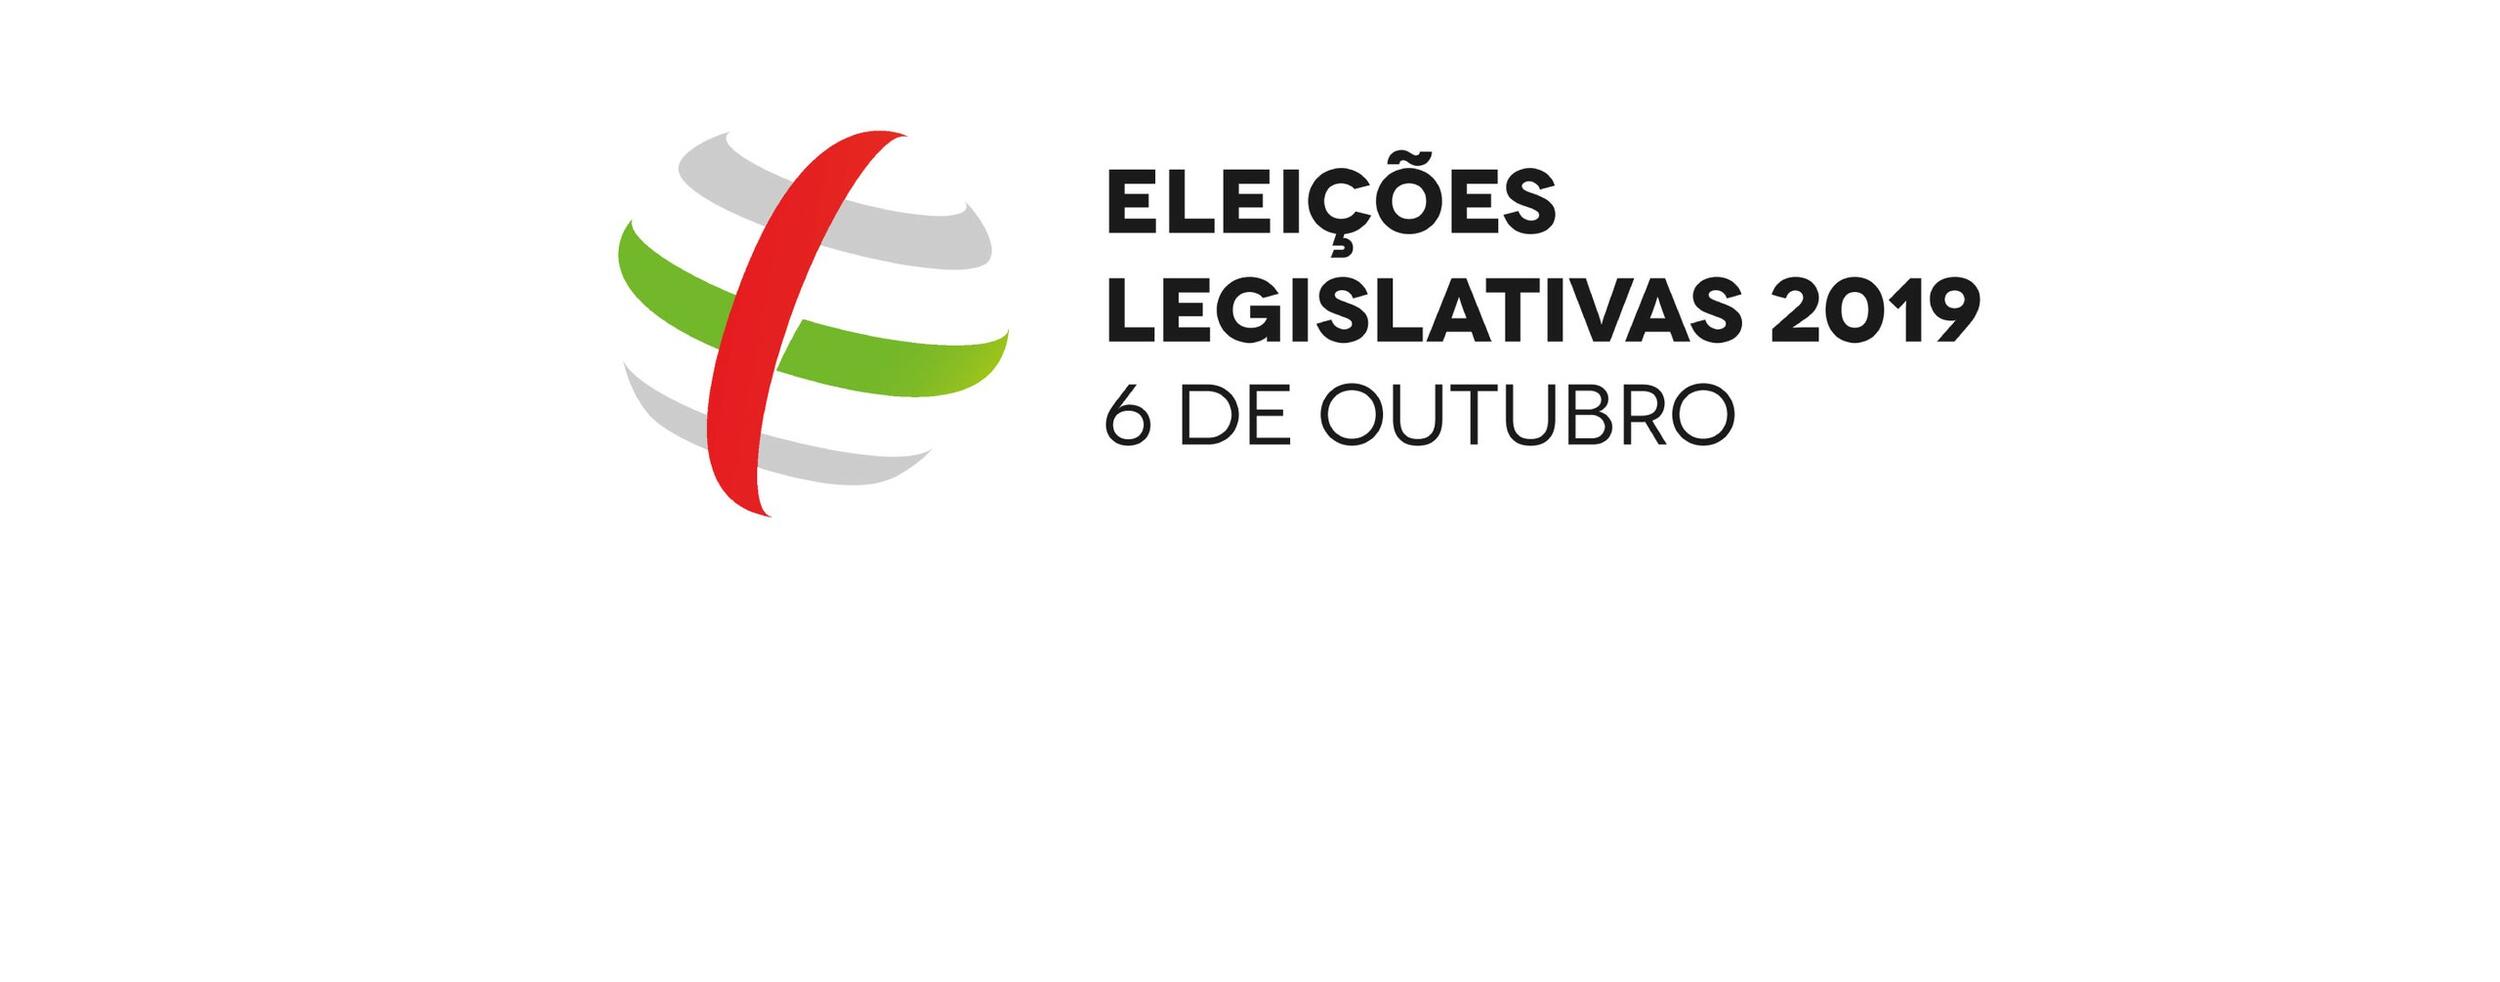 Legislativas 2019: Resultados provisórios no concelho de Palmela